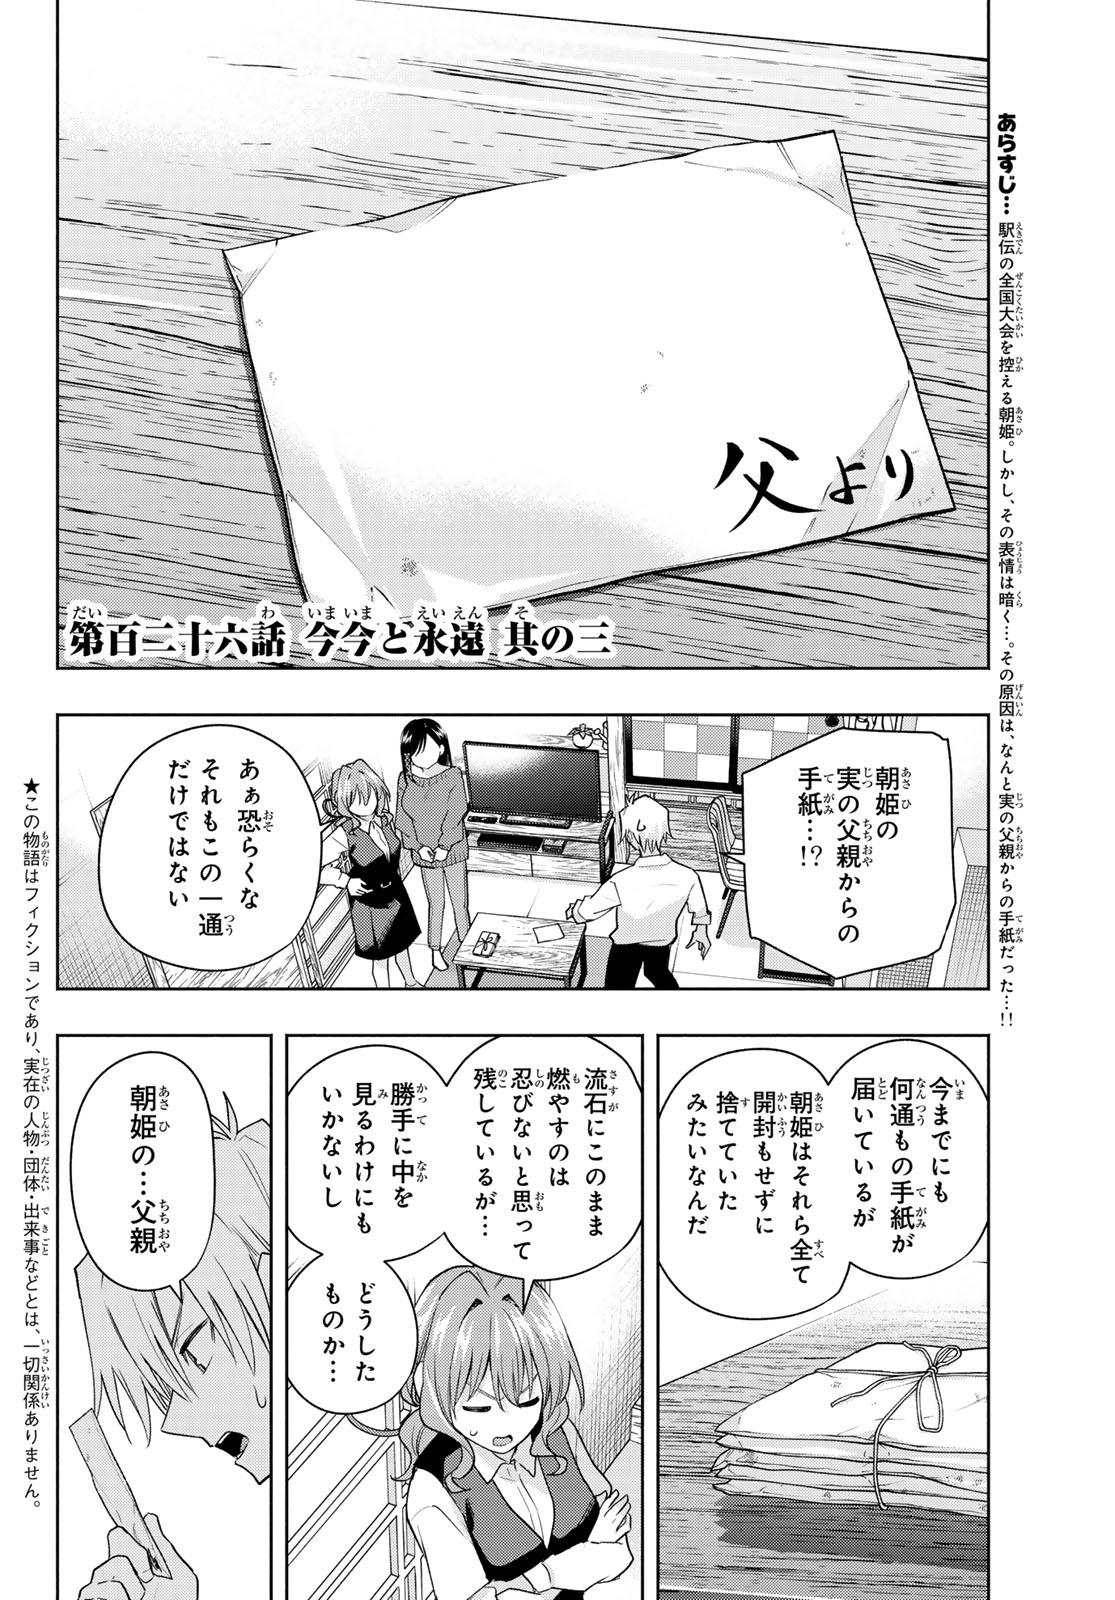 Amagami-san Chi no Enmusubi - Chapter 126 - Page 2